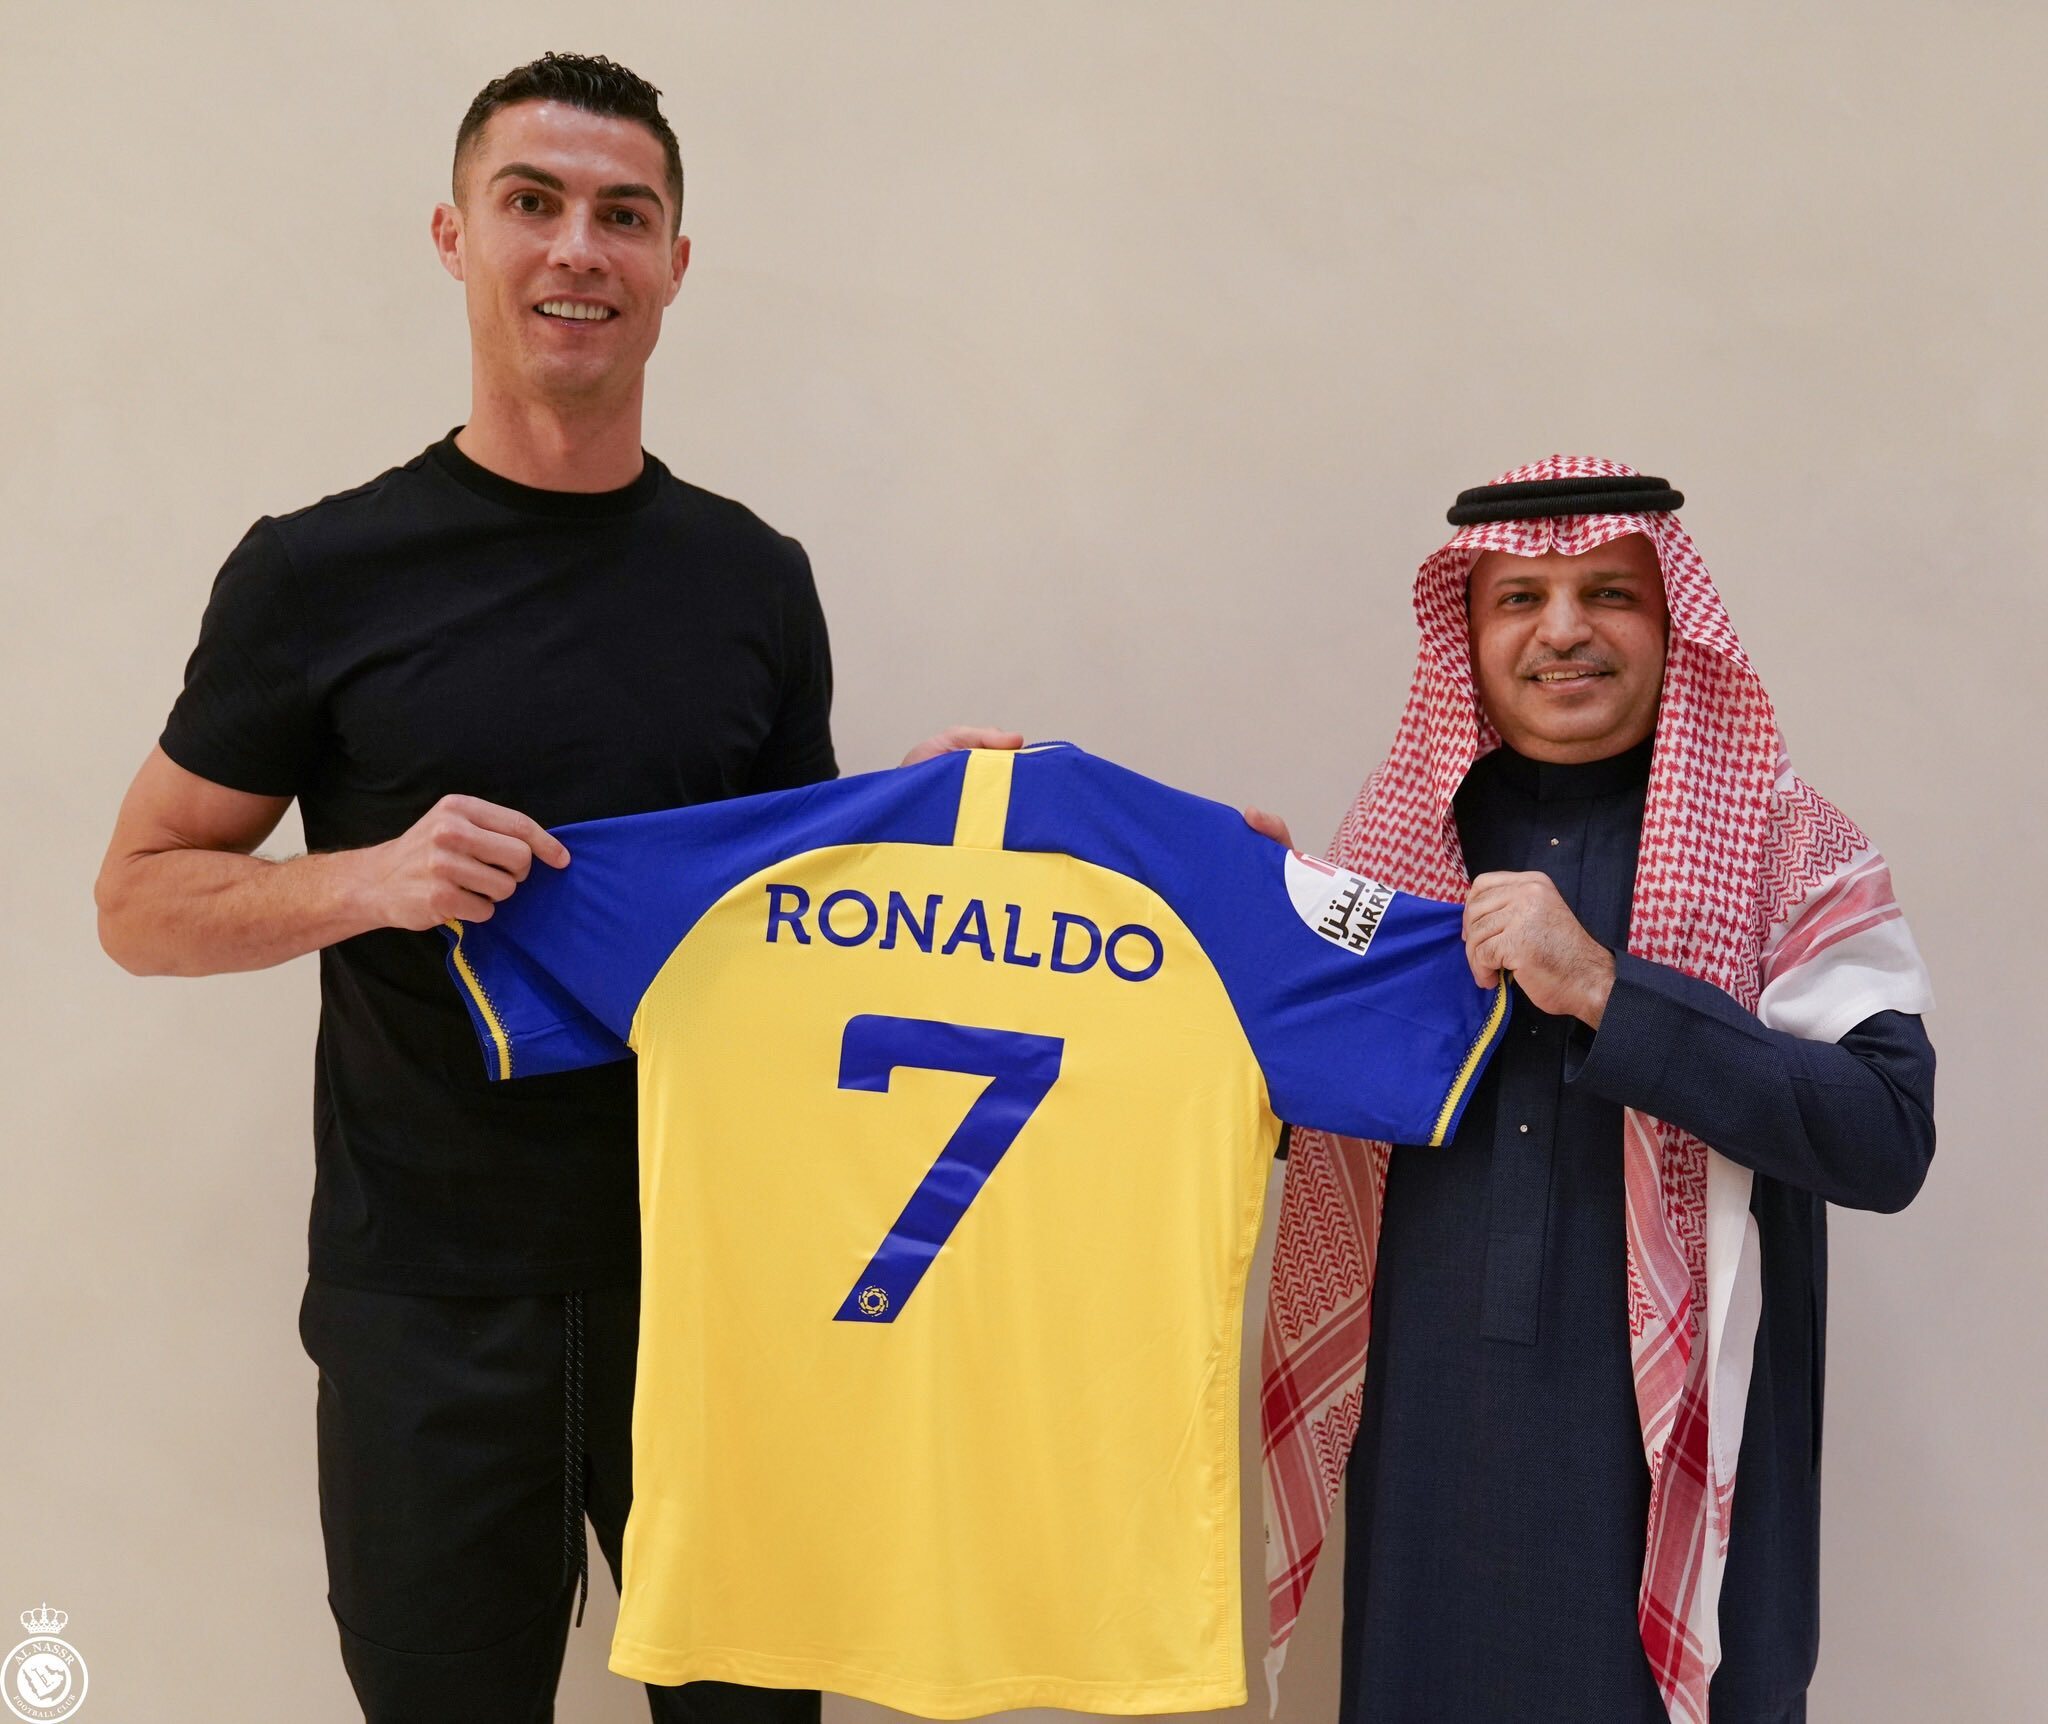 Saudi Arabia's Al-Nassr sign Portuguese soccer star Cristiano Ronaldo